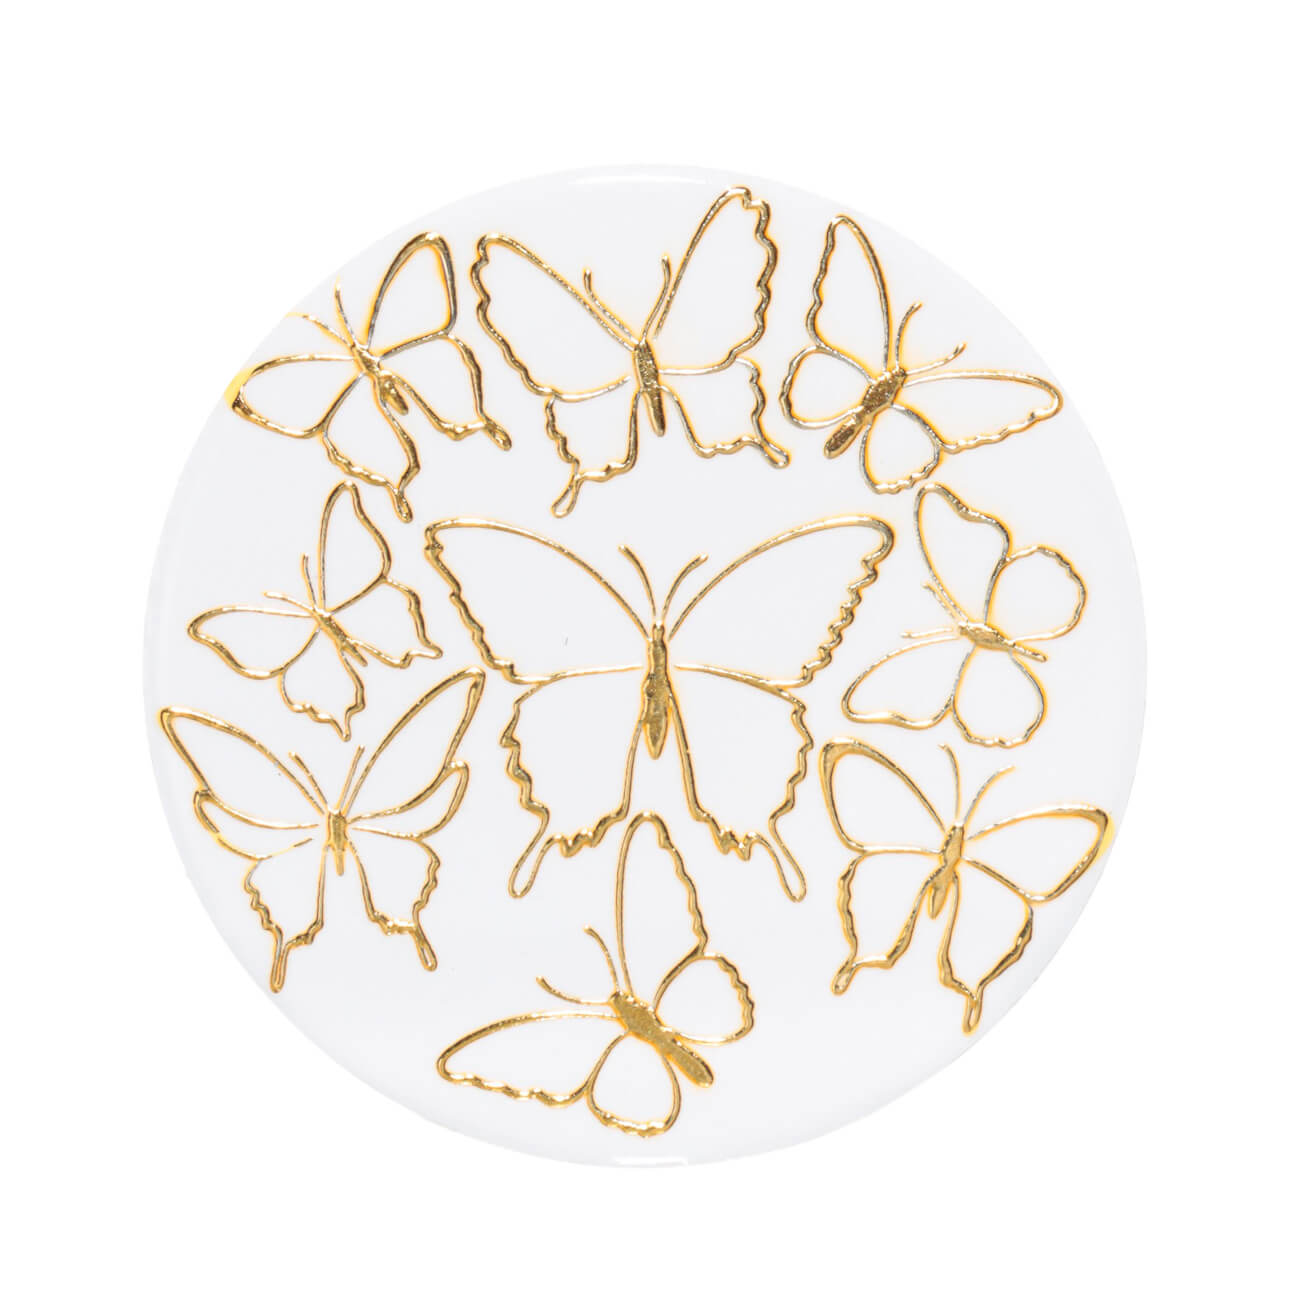 Подставка под кружку, 11 см, керамика/пробка, круглая, белая, Золотистые бабочки, Butterfly изображение № 1